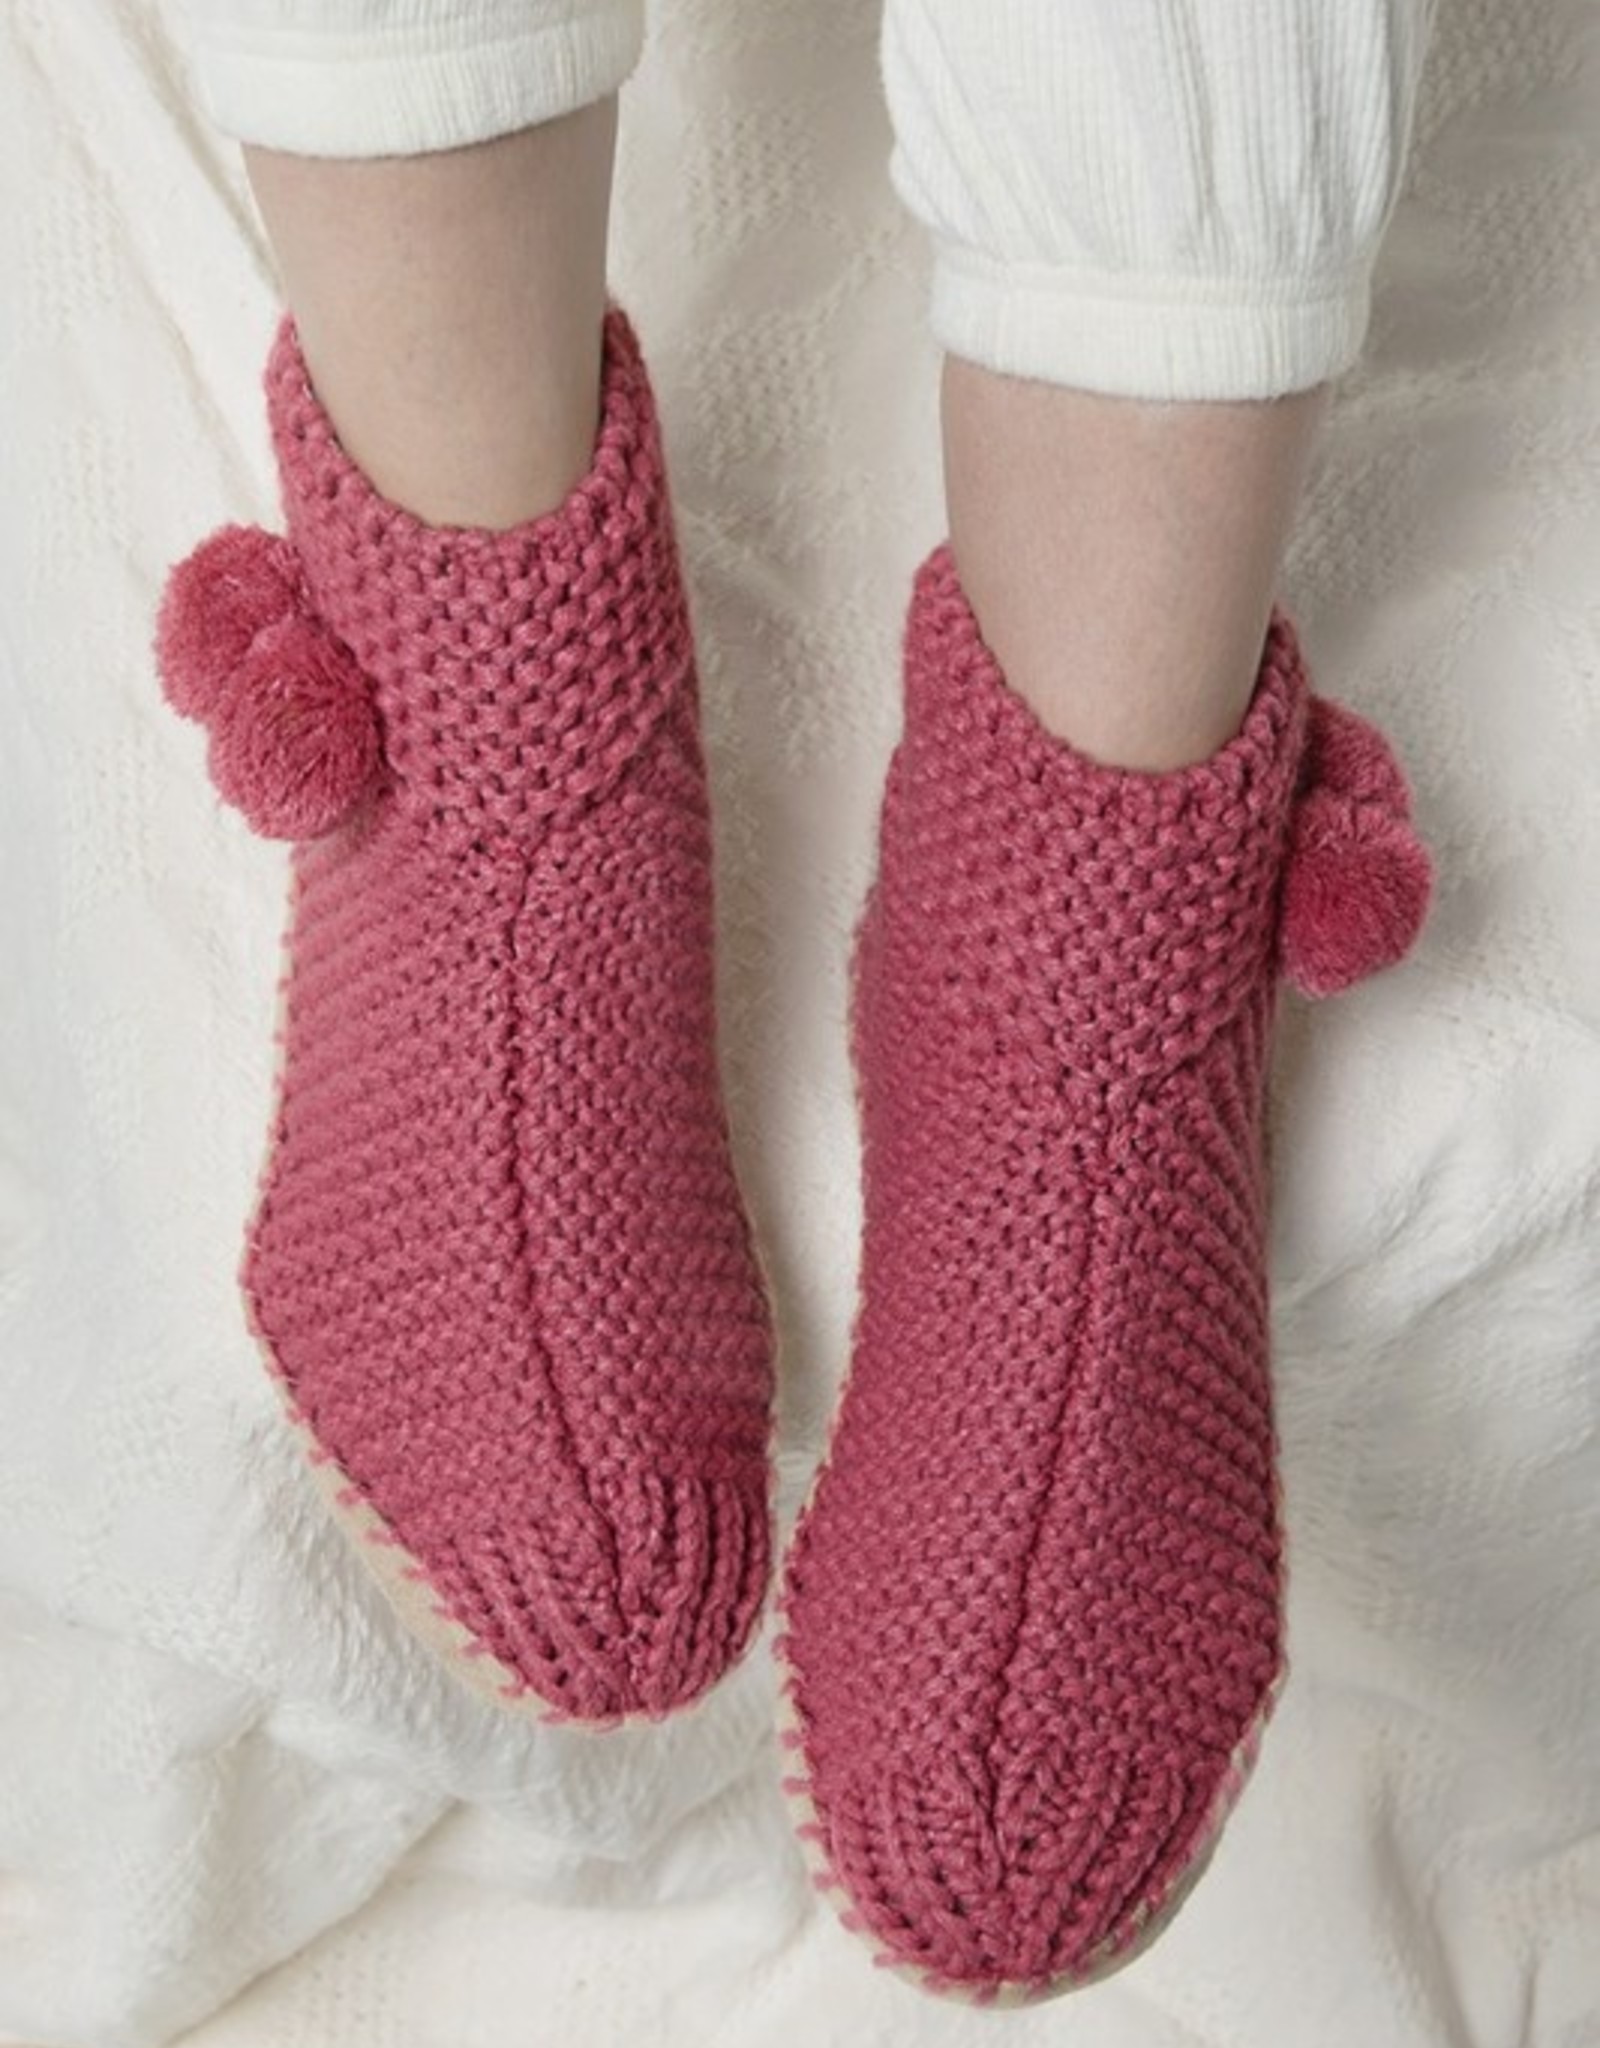 Slippers-Knitted W/Pom Pom